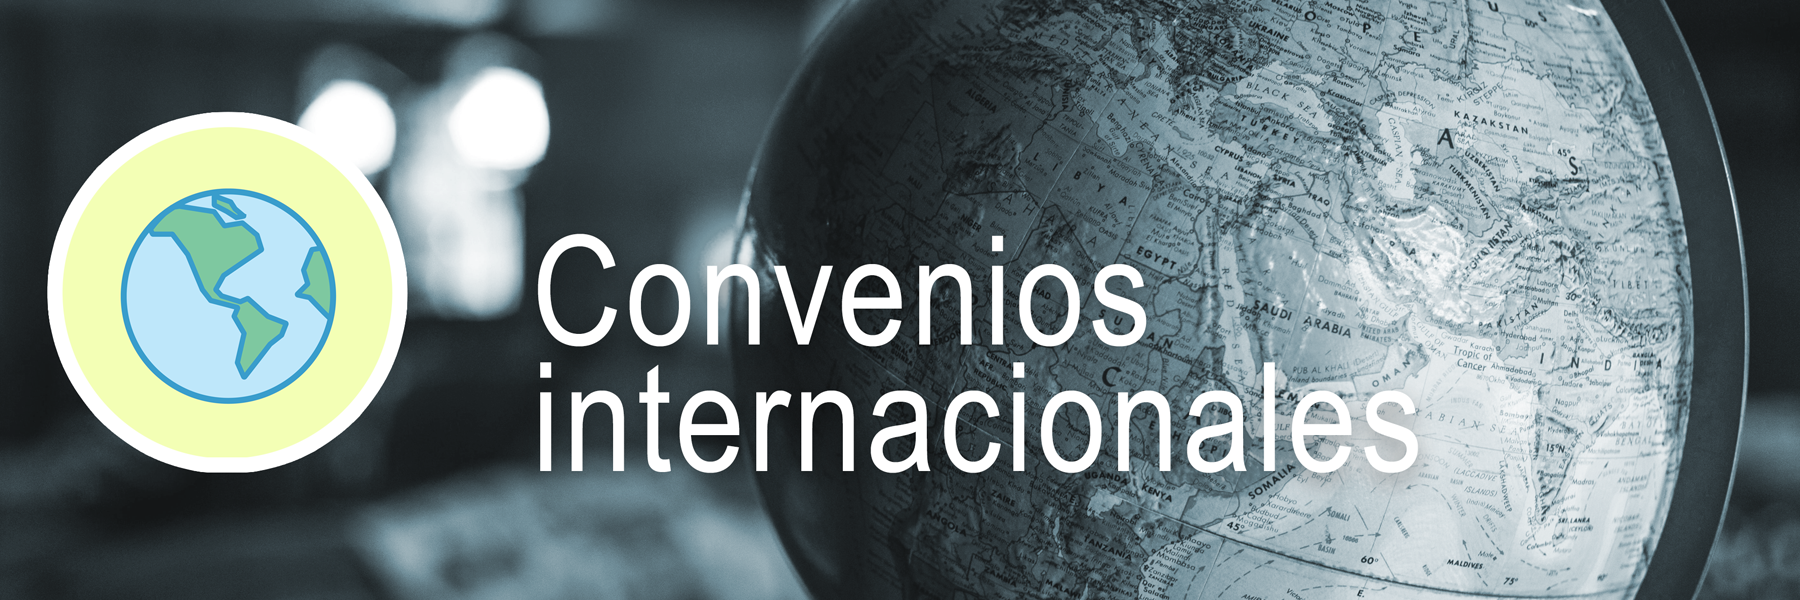 Convenios internacionales